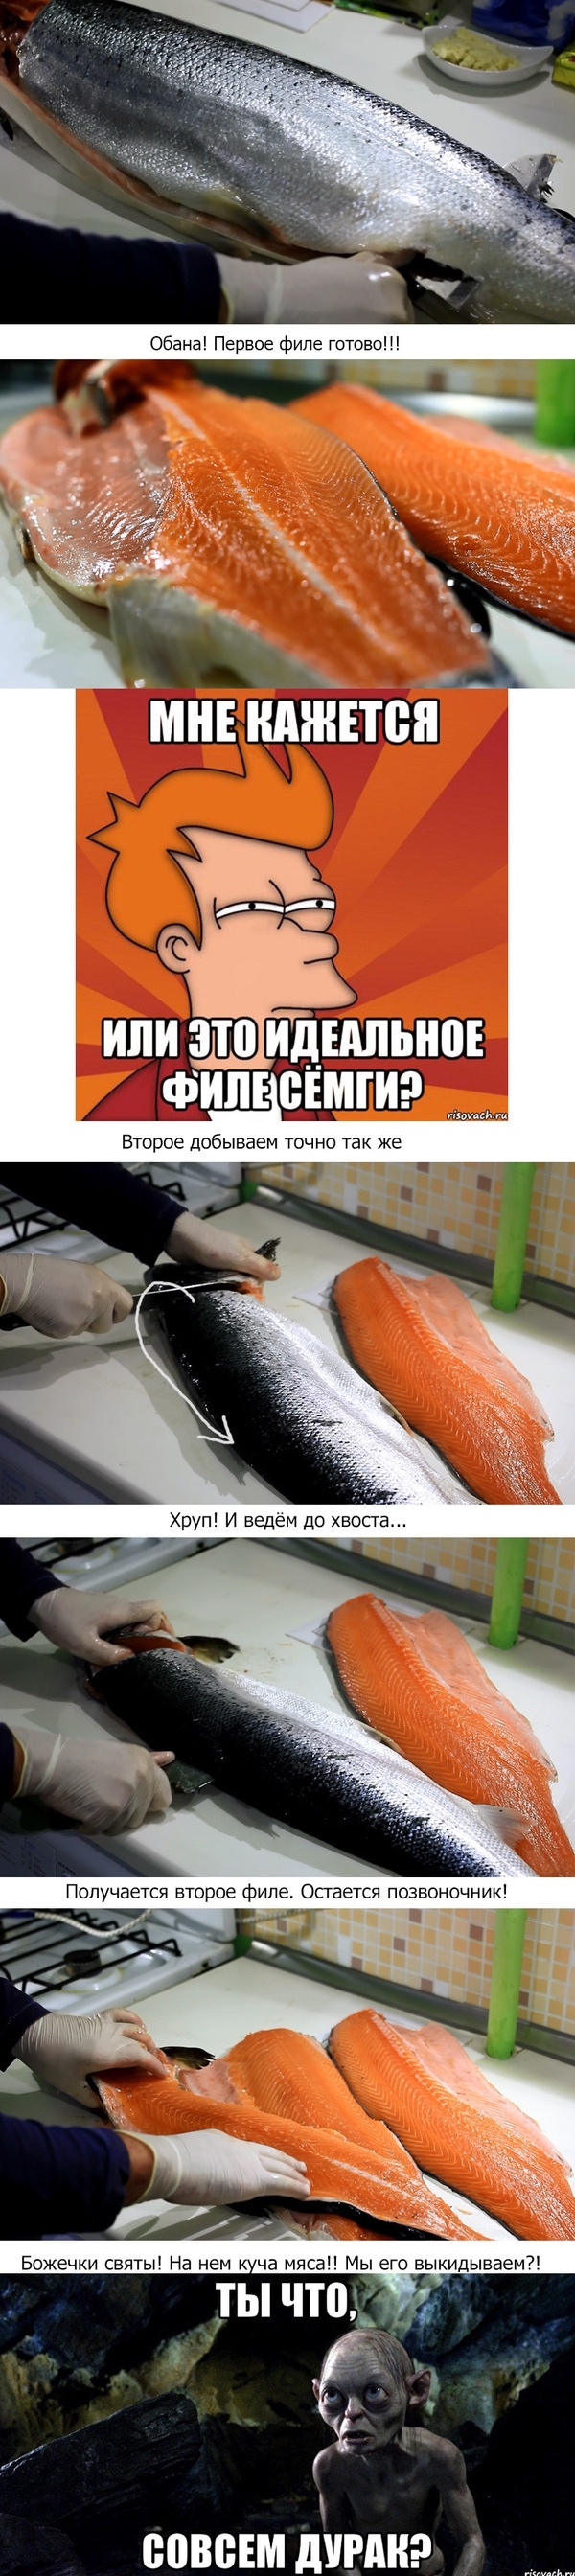 Пост про то как солить красную рыбу.